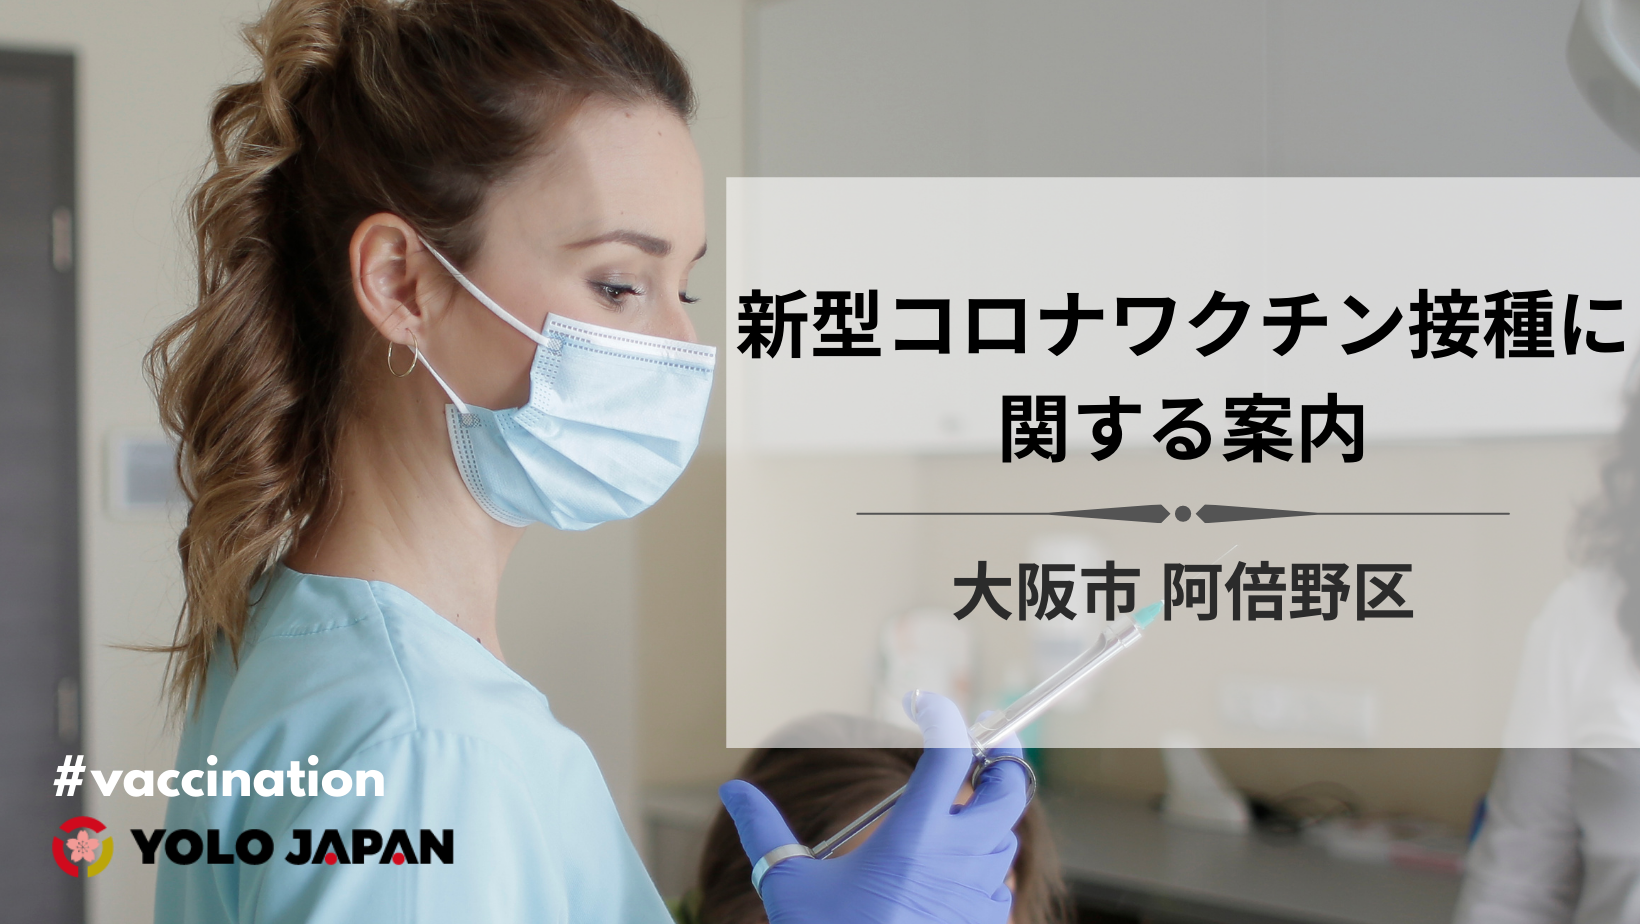 大阪市阿倍野区 新冠疫苗接种信息 外国人生活的实用信息 Yolo Japan